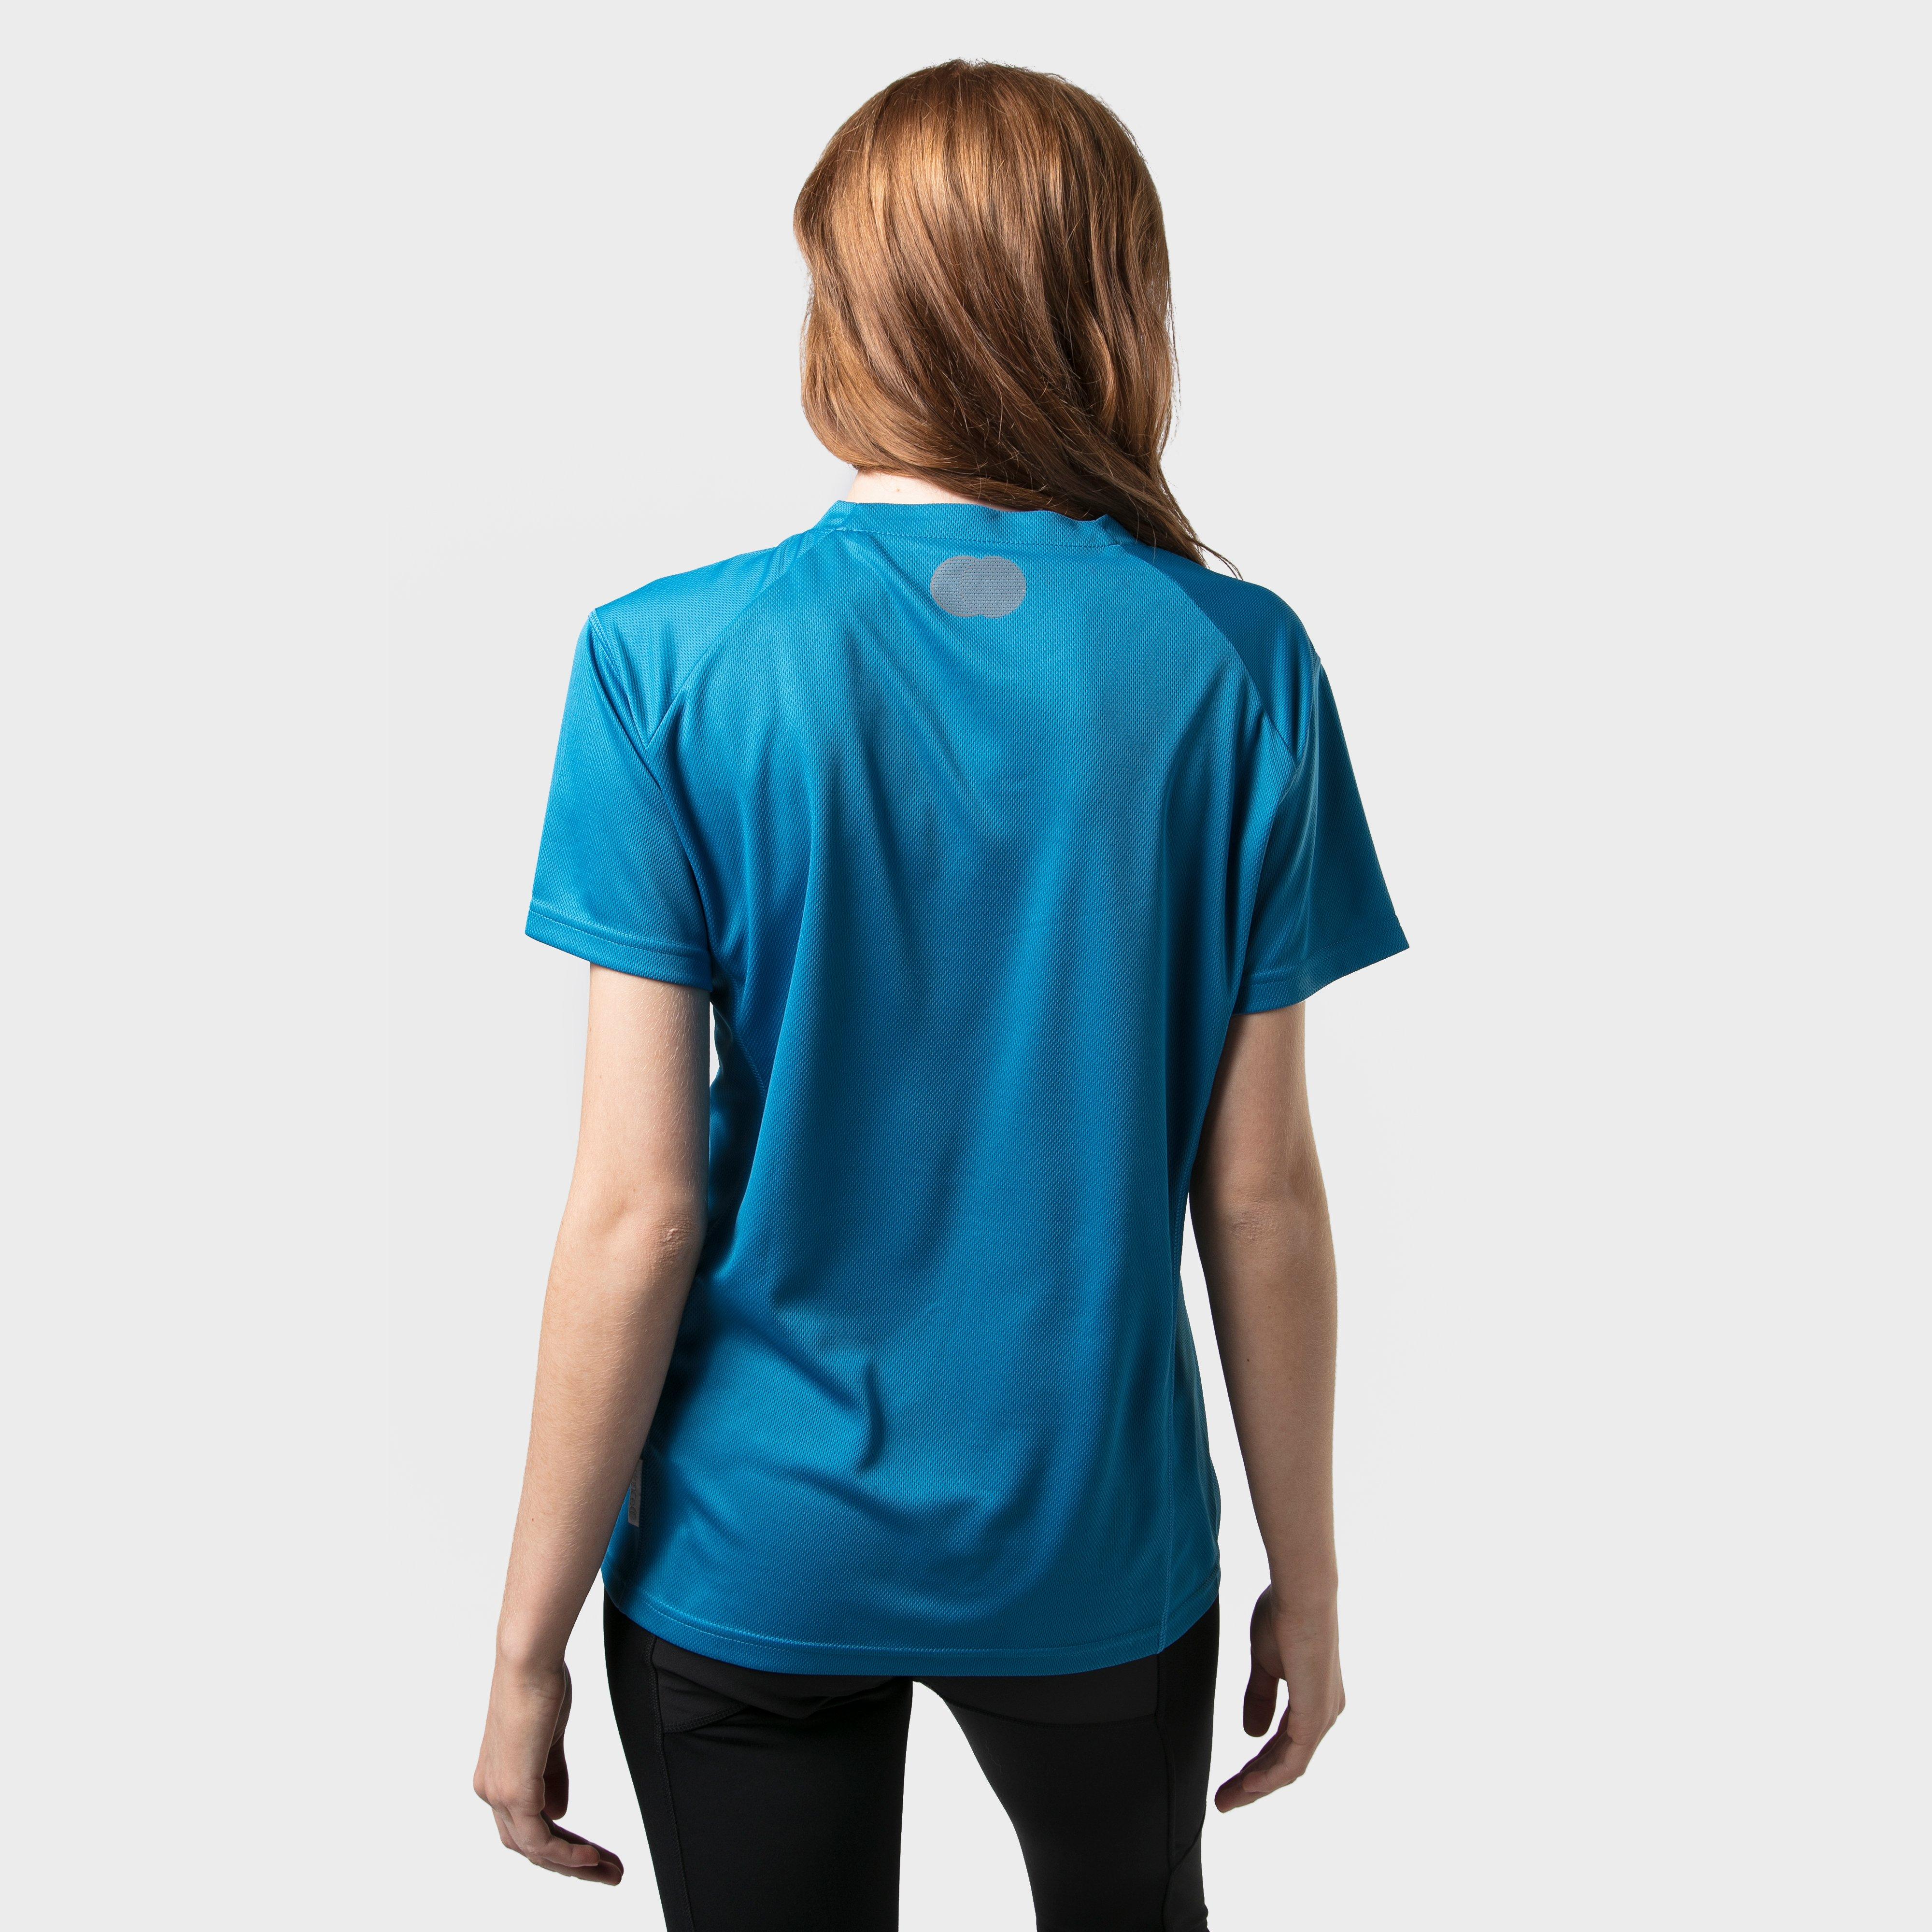 Peter Storm Women's Short Sleeve Tech T-Shirt Review